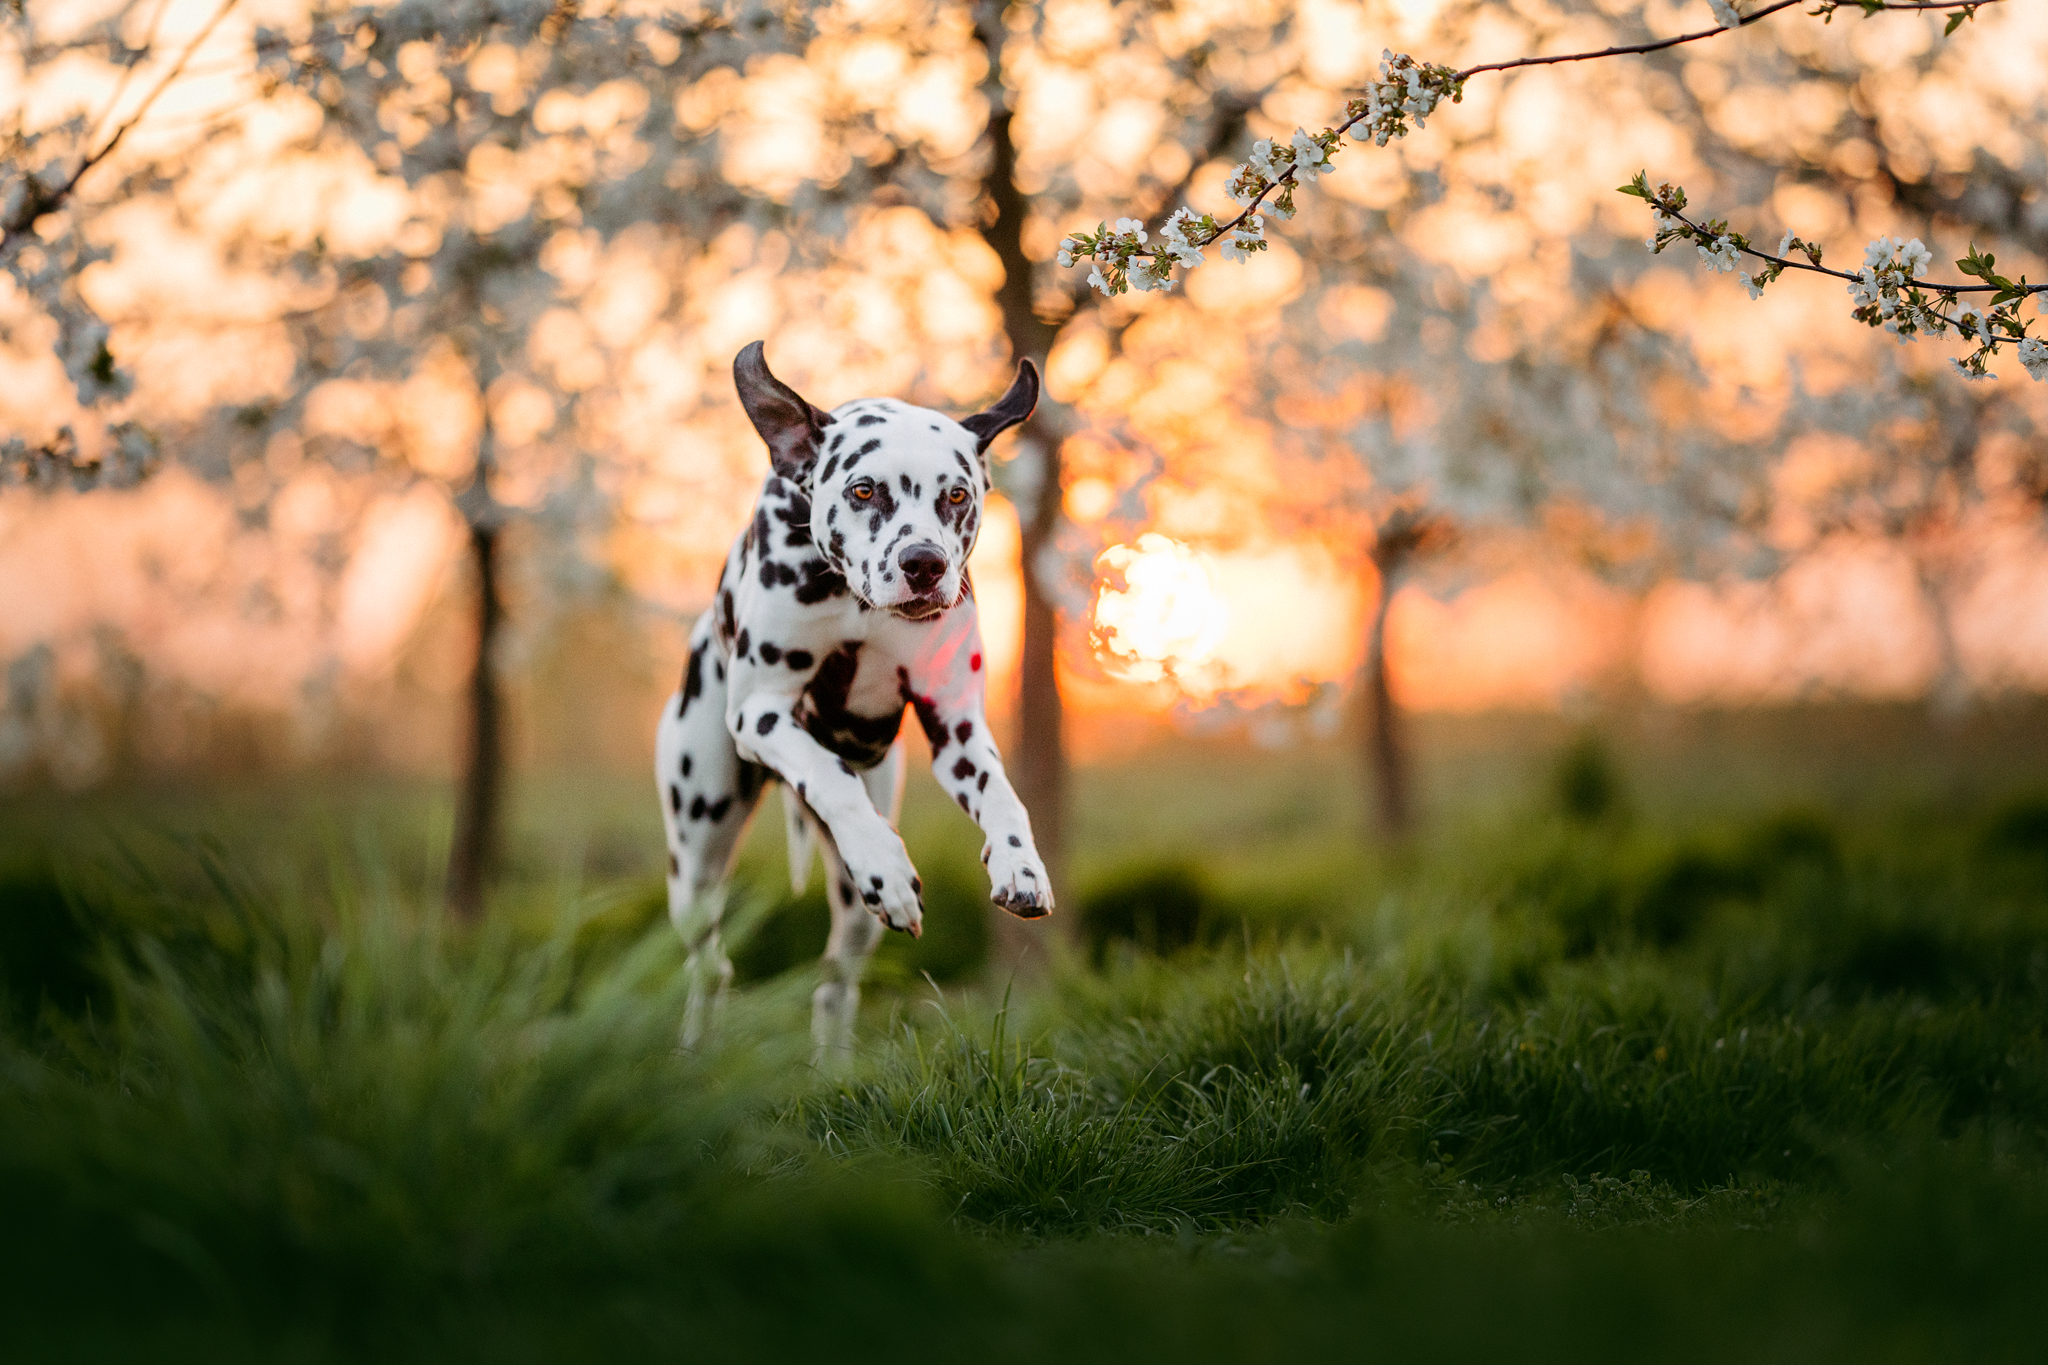 Ein Hund / Dalmatiner läuft im Abendlicht durch eine Kirschbaum-Plantage in der Nähe Hannover. Fotografiert von Kim Kärger Photography